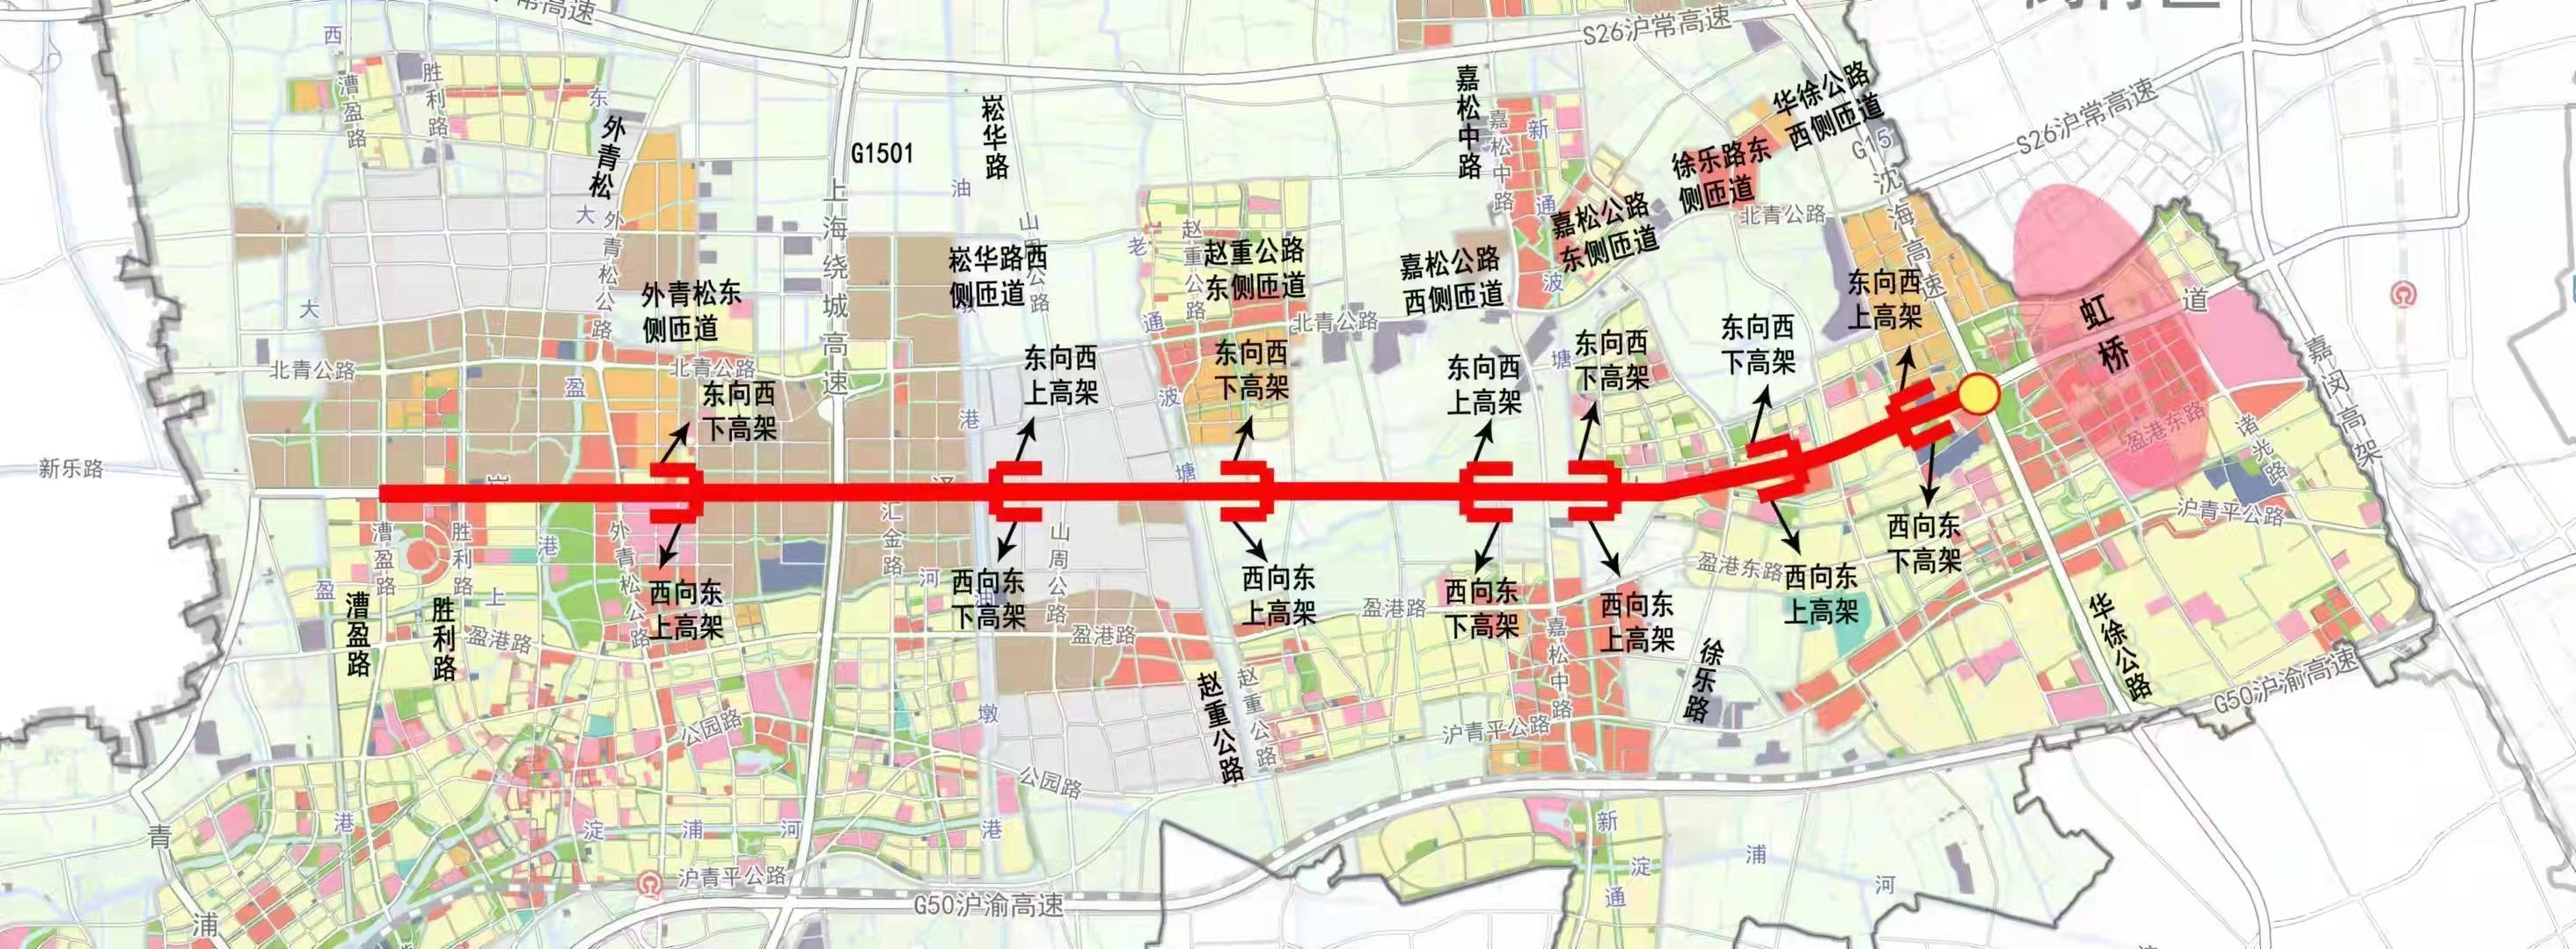 崧泽高架线路示意图 青浦区供图上海市重大工程项目,贯穿青浦东西